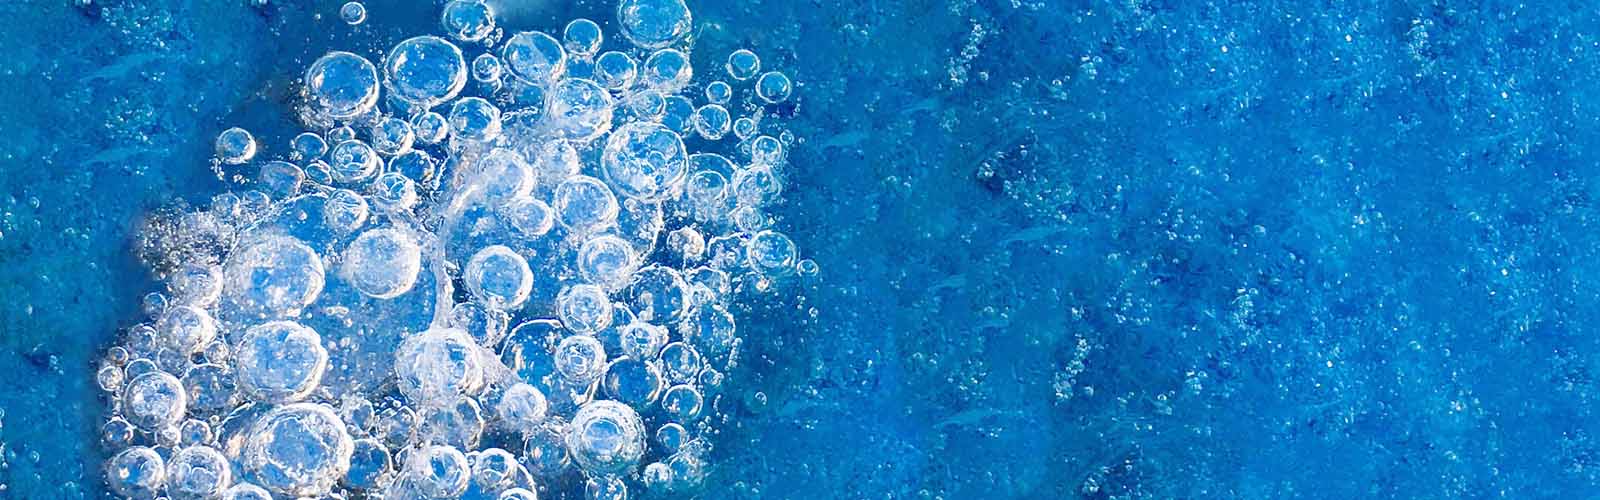 Luftblasen im Wasser Bio Conditioner